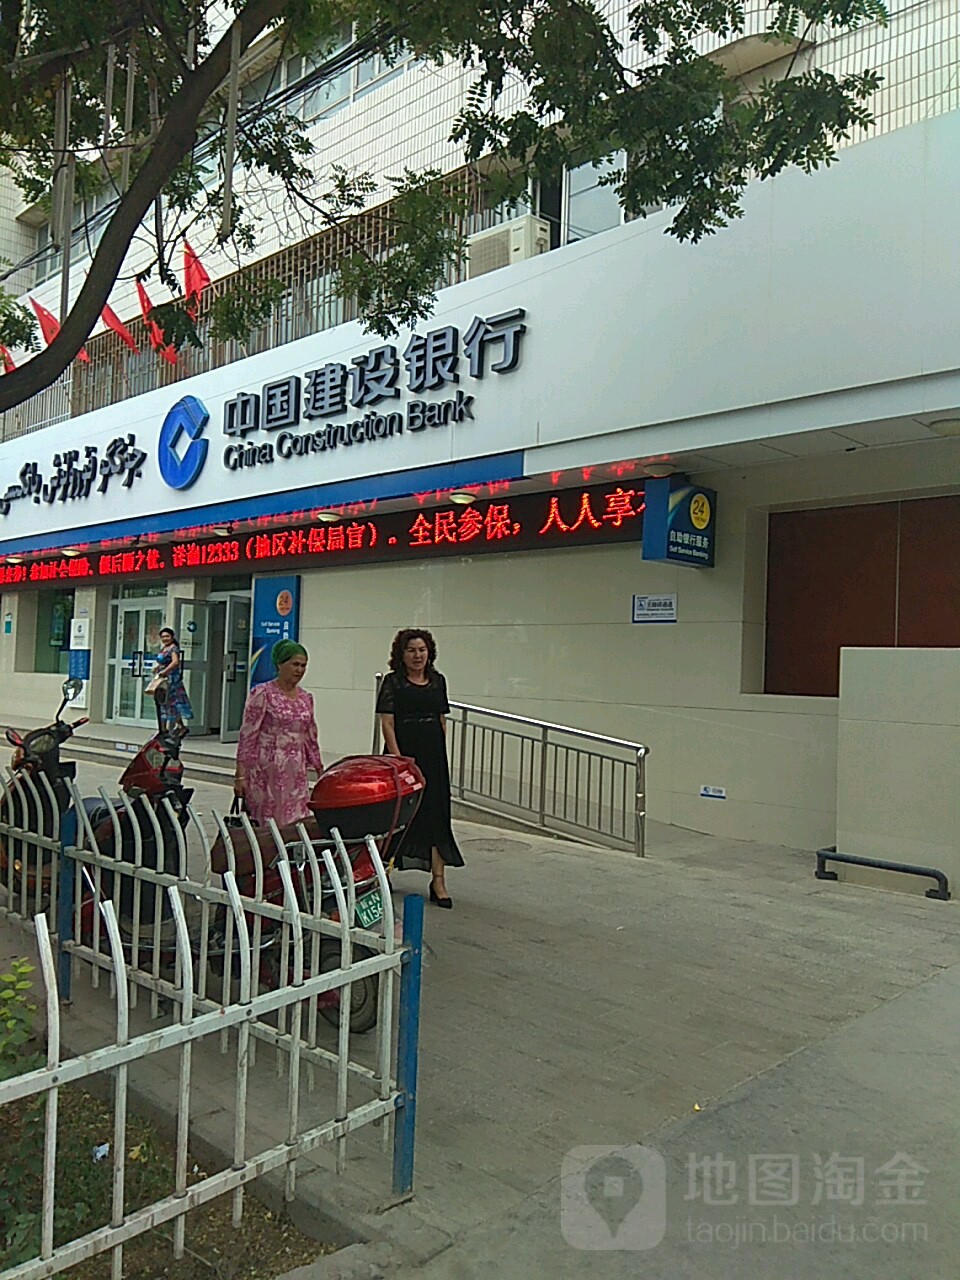 中國建設銀行24小時自助銀行(溫宿縣支行營業部)